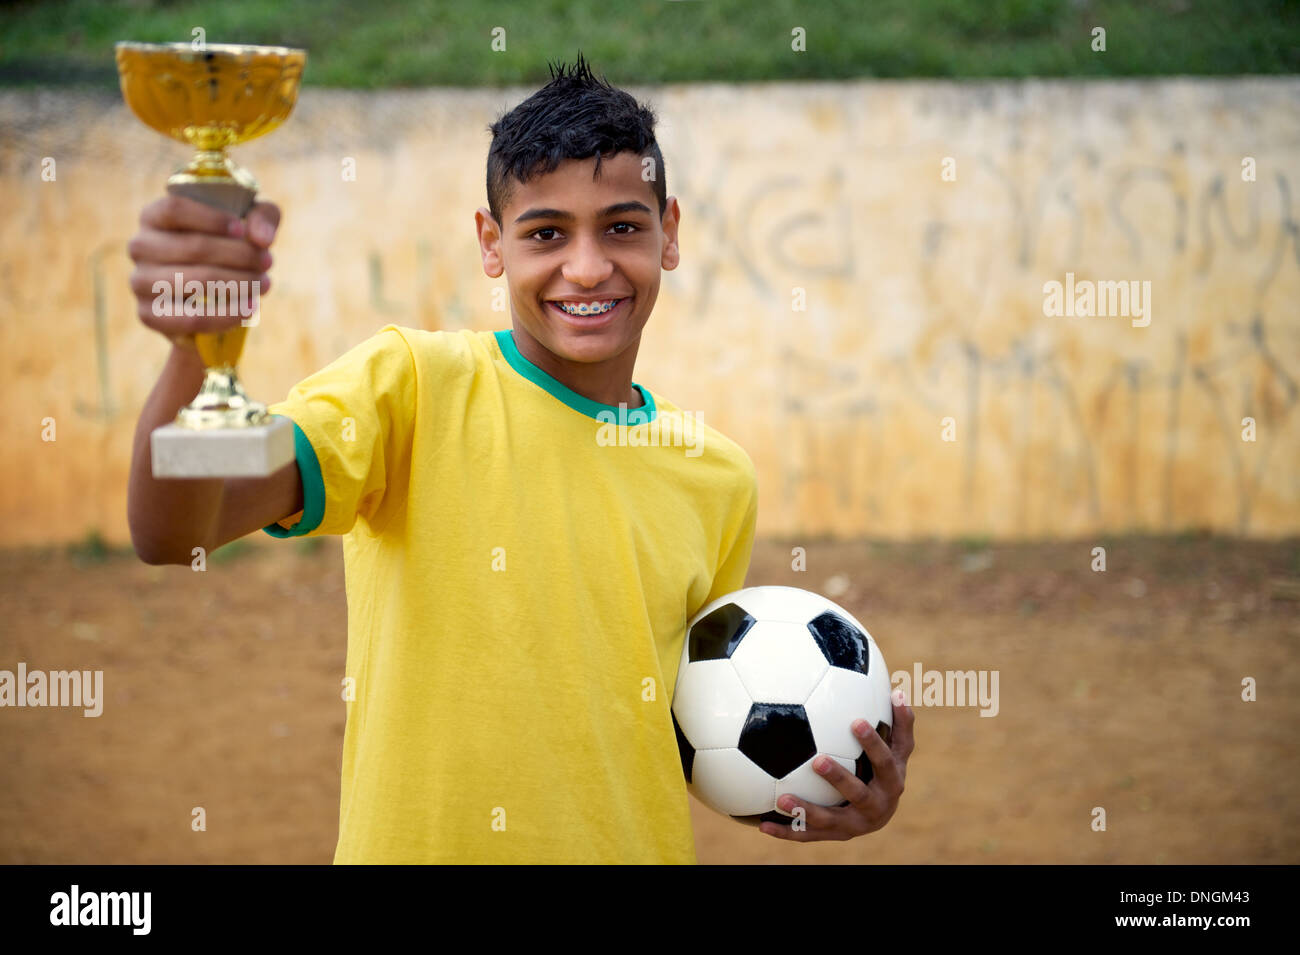 Jeune joueur de football brésilien, holding trophy et ballon de soccer sur un terrain de football de saleté de base Banque D'Images